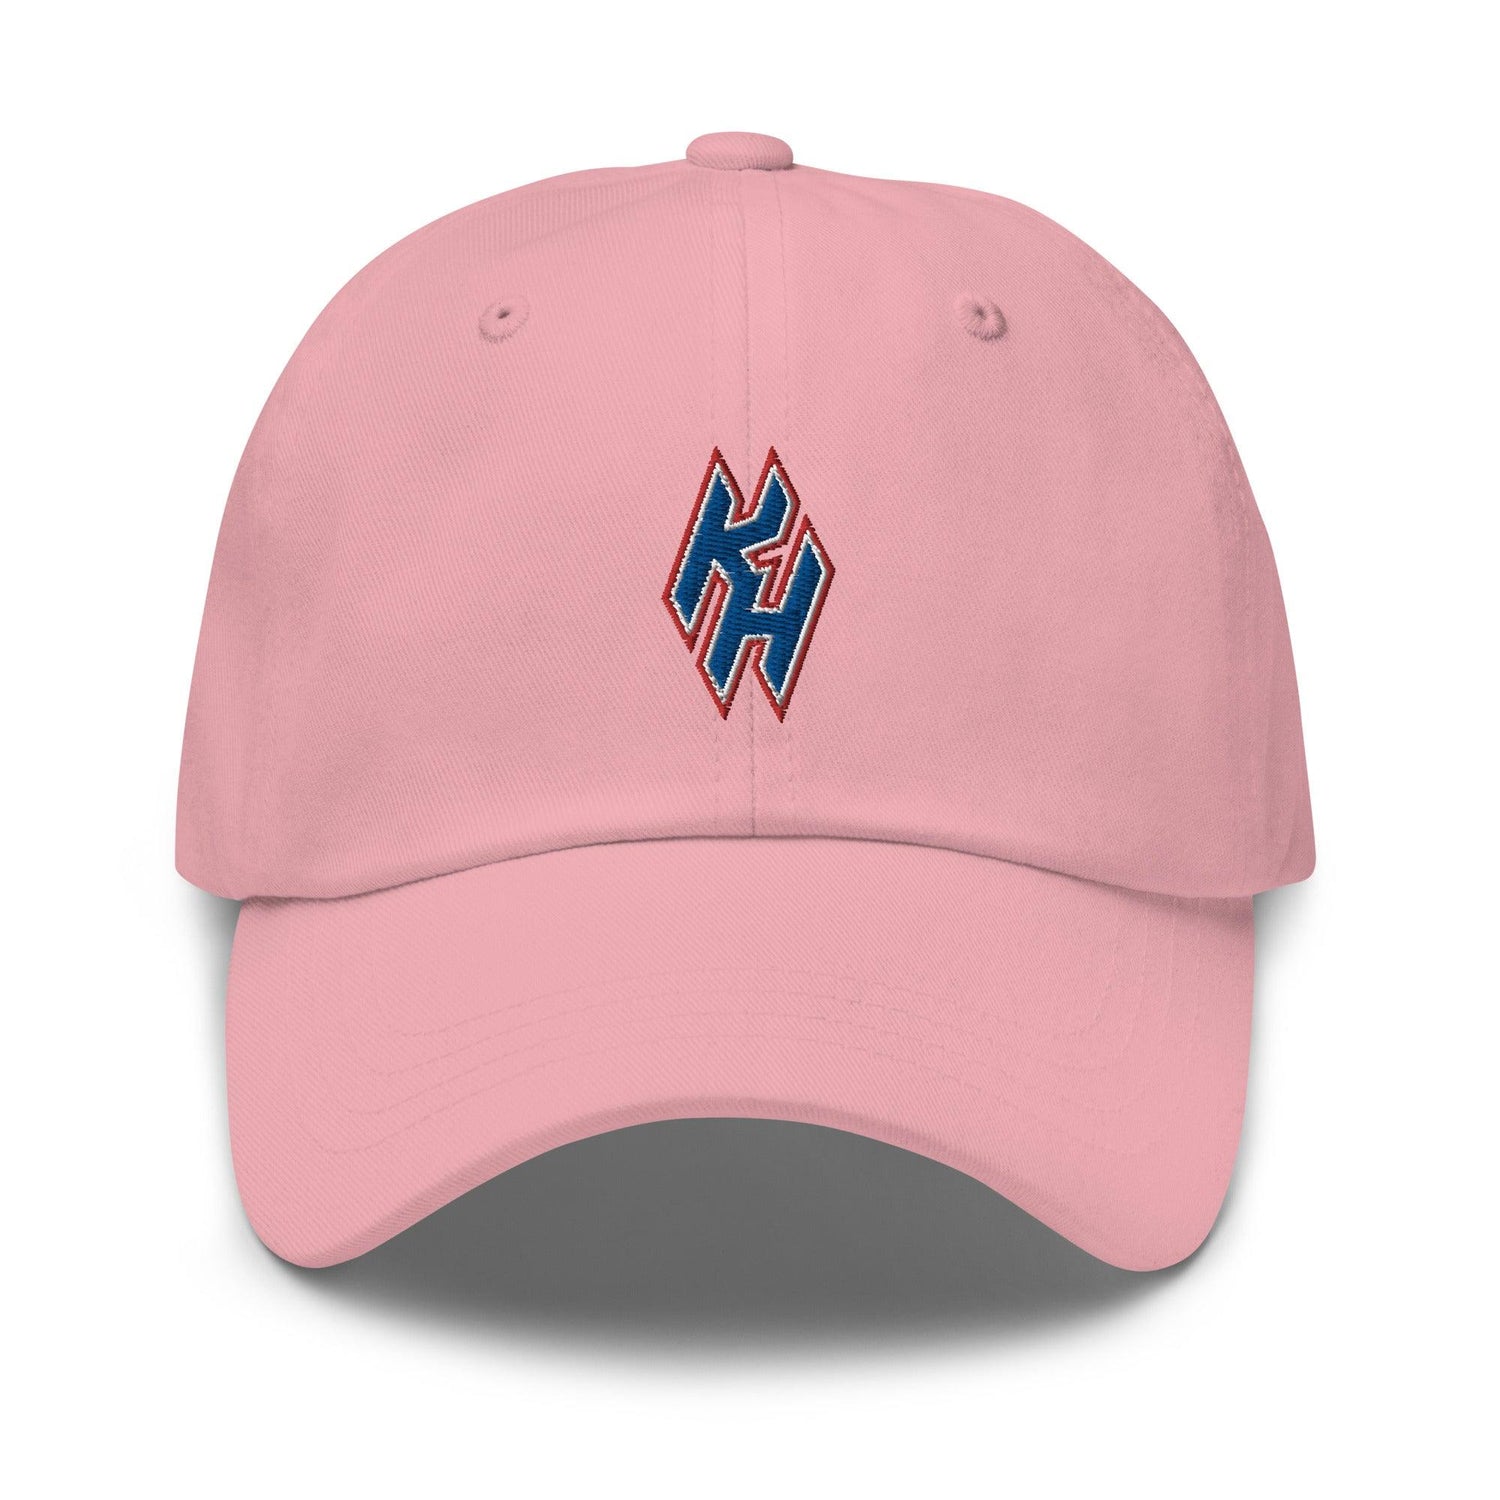 Kody Hoese "Essential" hat - Fan Arch